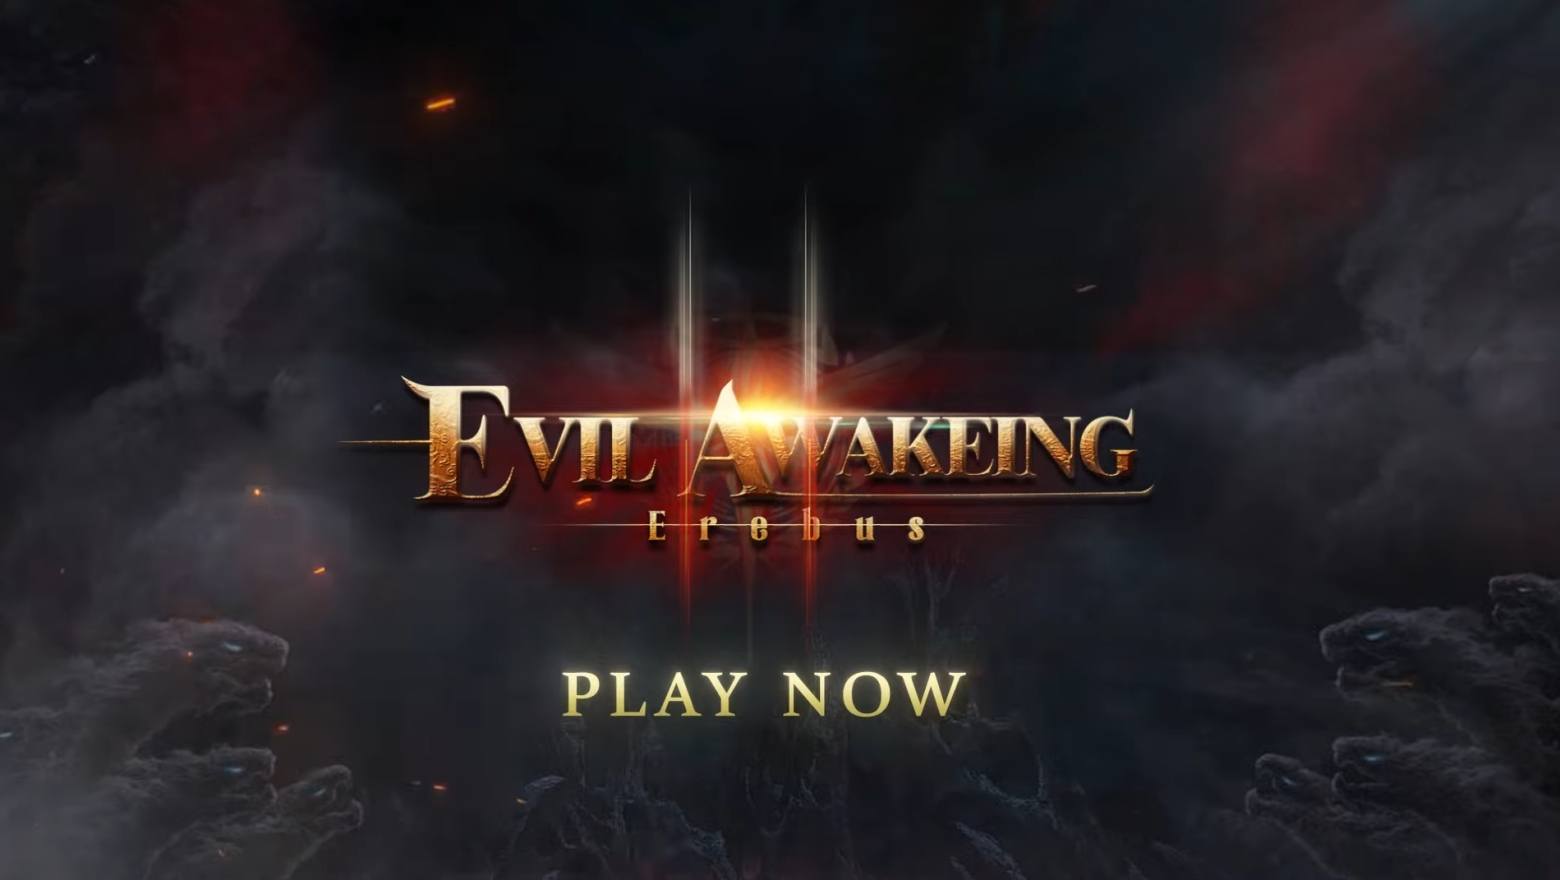 Böses Erwachen II: Erebus, das mit Spannung erwartete MMORPG-Sequel, ist jetzt zum Download auf Android-Geräten verfügbar.